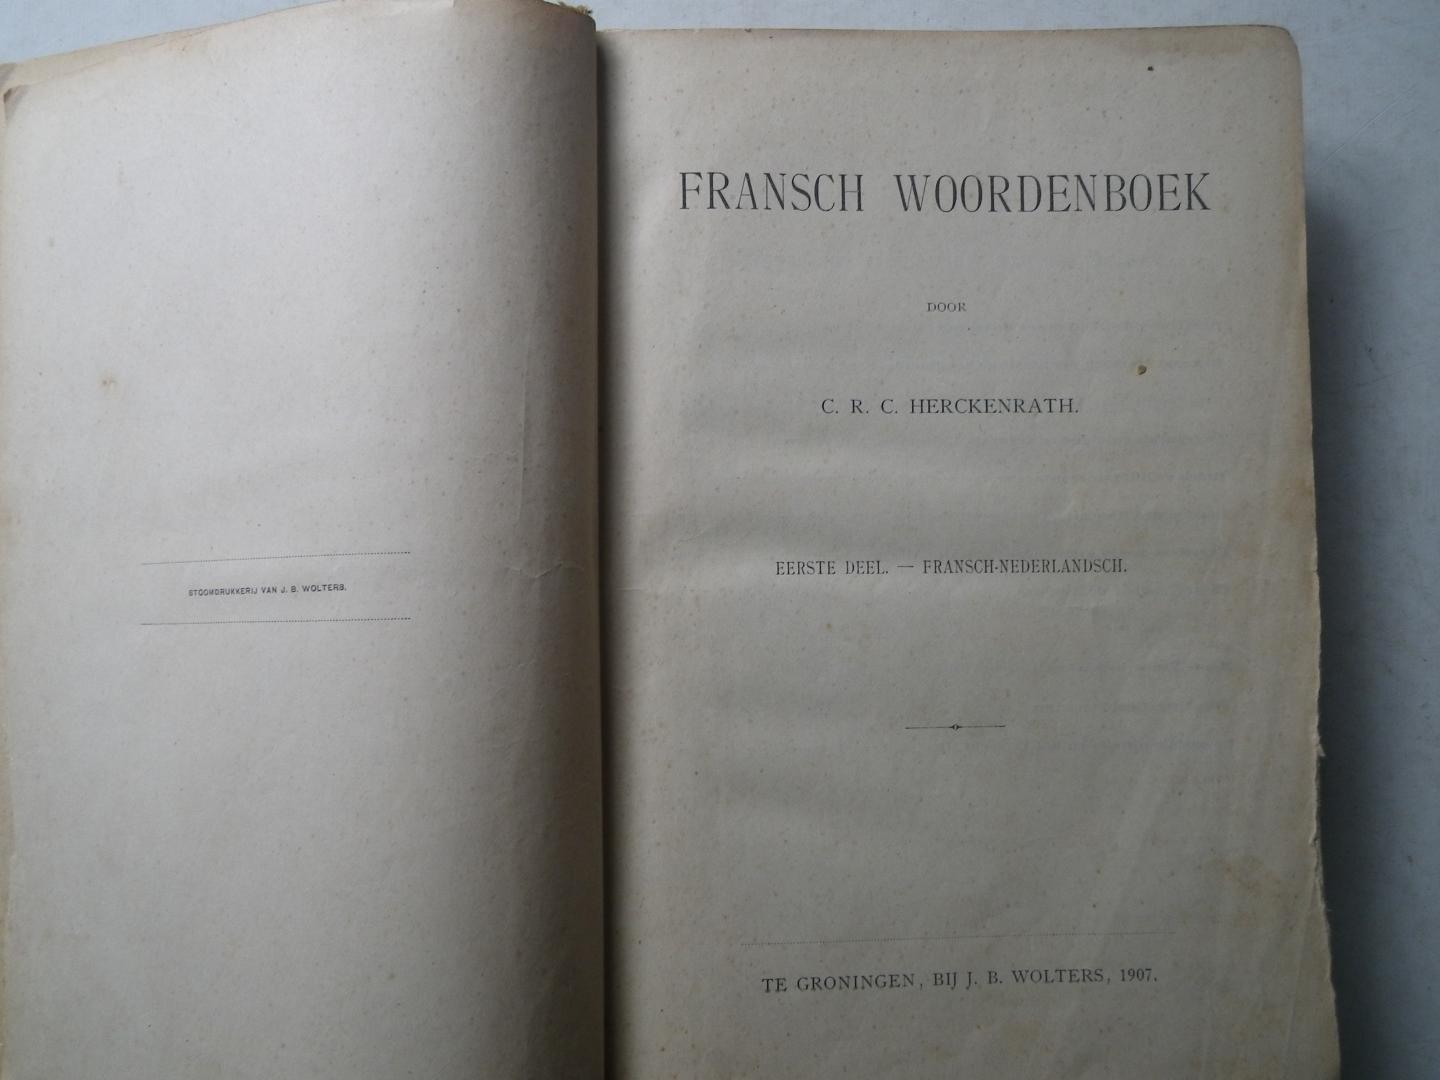 Herckenrath, C.R.C. - Fransch woordenboek - eerste deel - Fransch-Nederlandsch